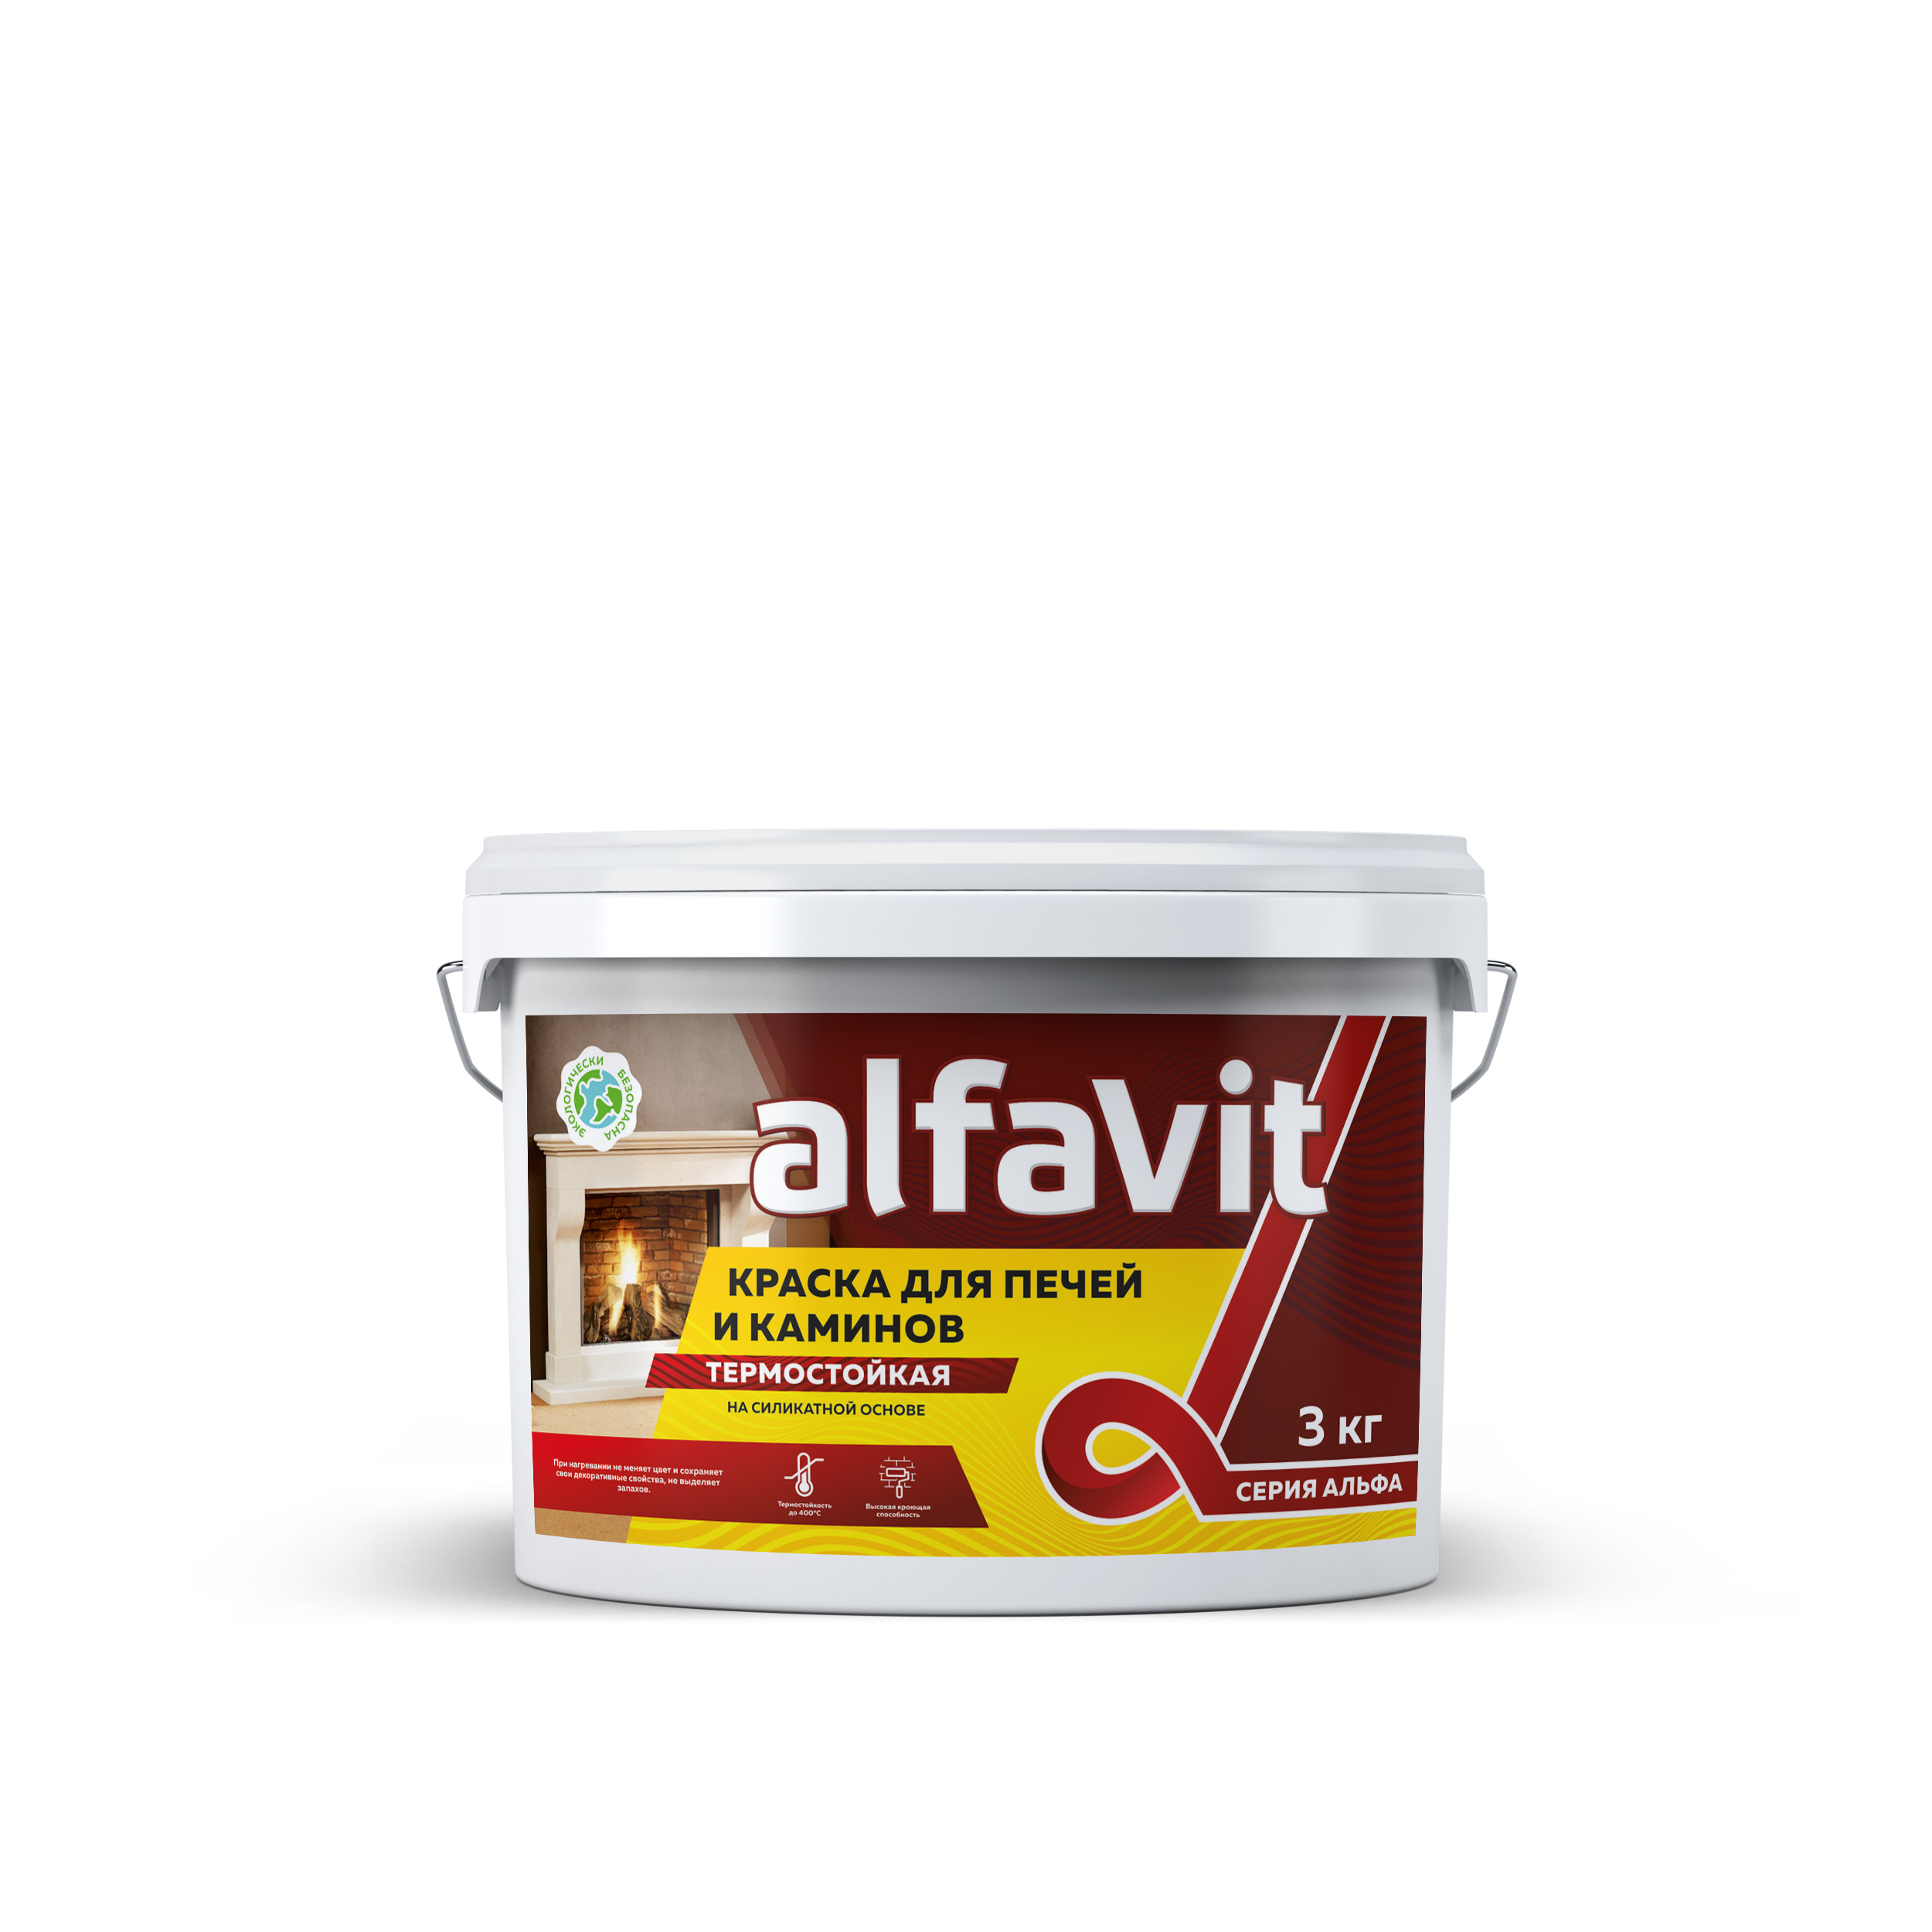 Краска для печей и каминов термостойкая Alfavit серия Альфа, красно-коричневая, 1,3 кг обмазка для печей и каминов krafor